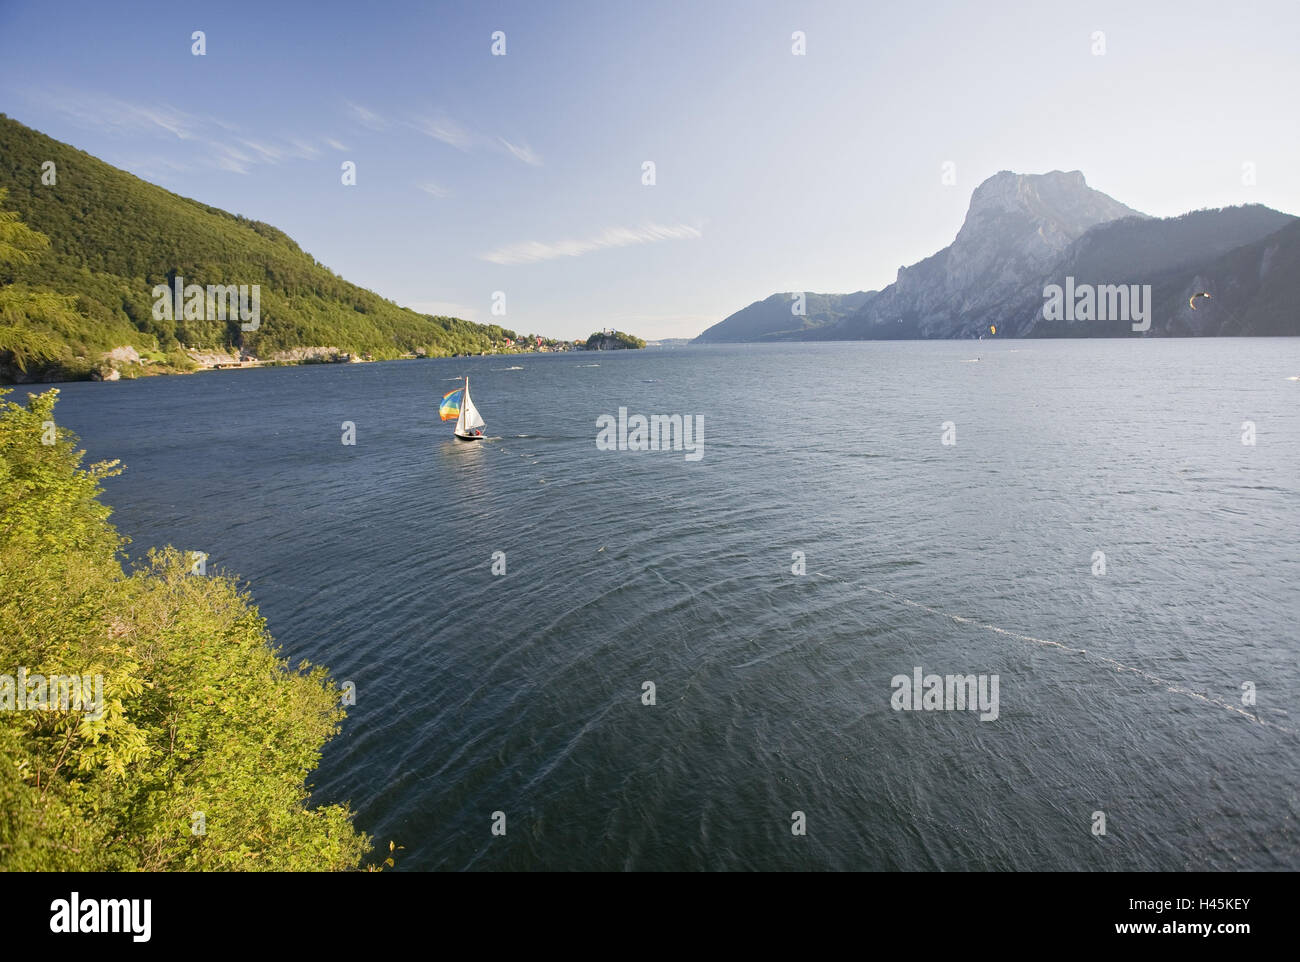 Austria, Austria superiore, sale di proprietà della camera, Traunstein, Traunsee, barche a vela, vela, Foto Stock